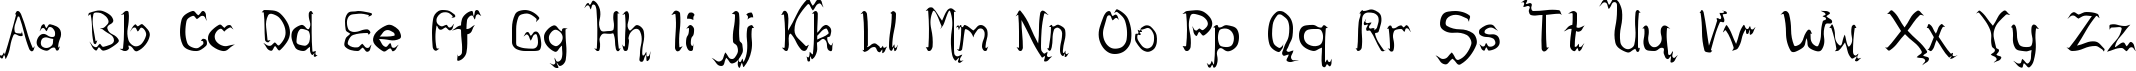 Пример написания английского алфавита шрифтом fack